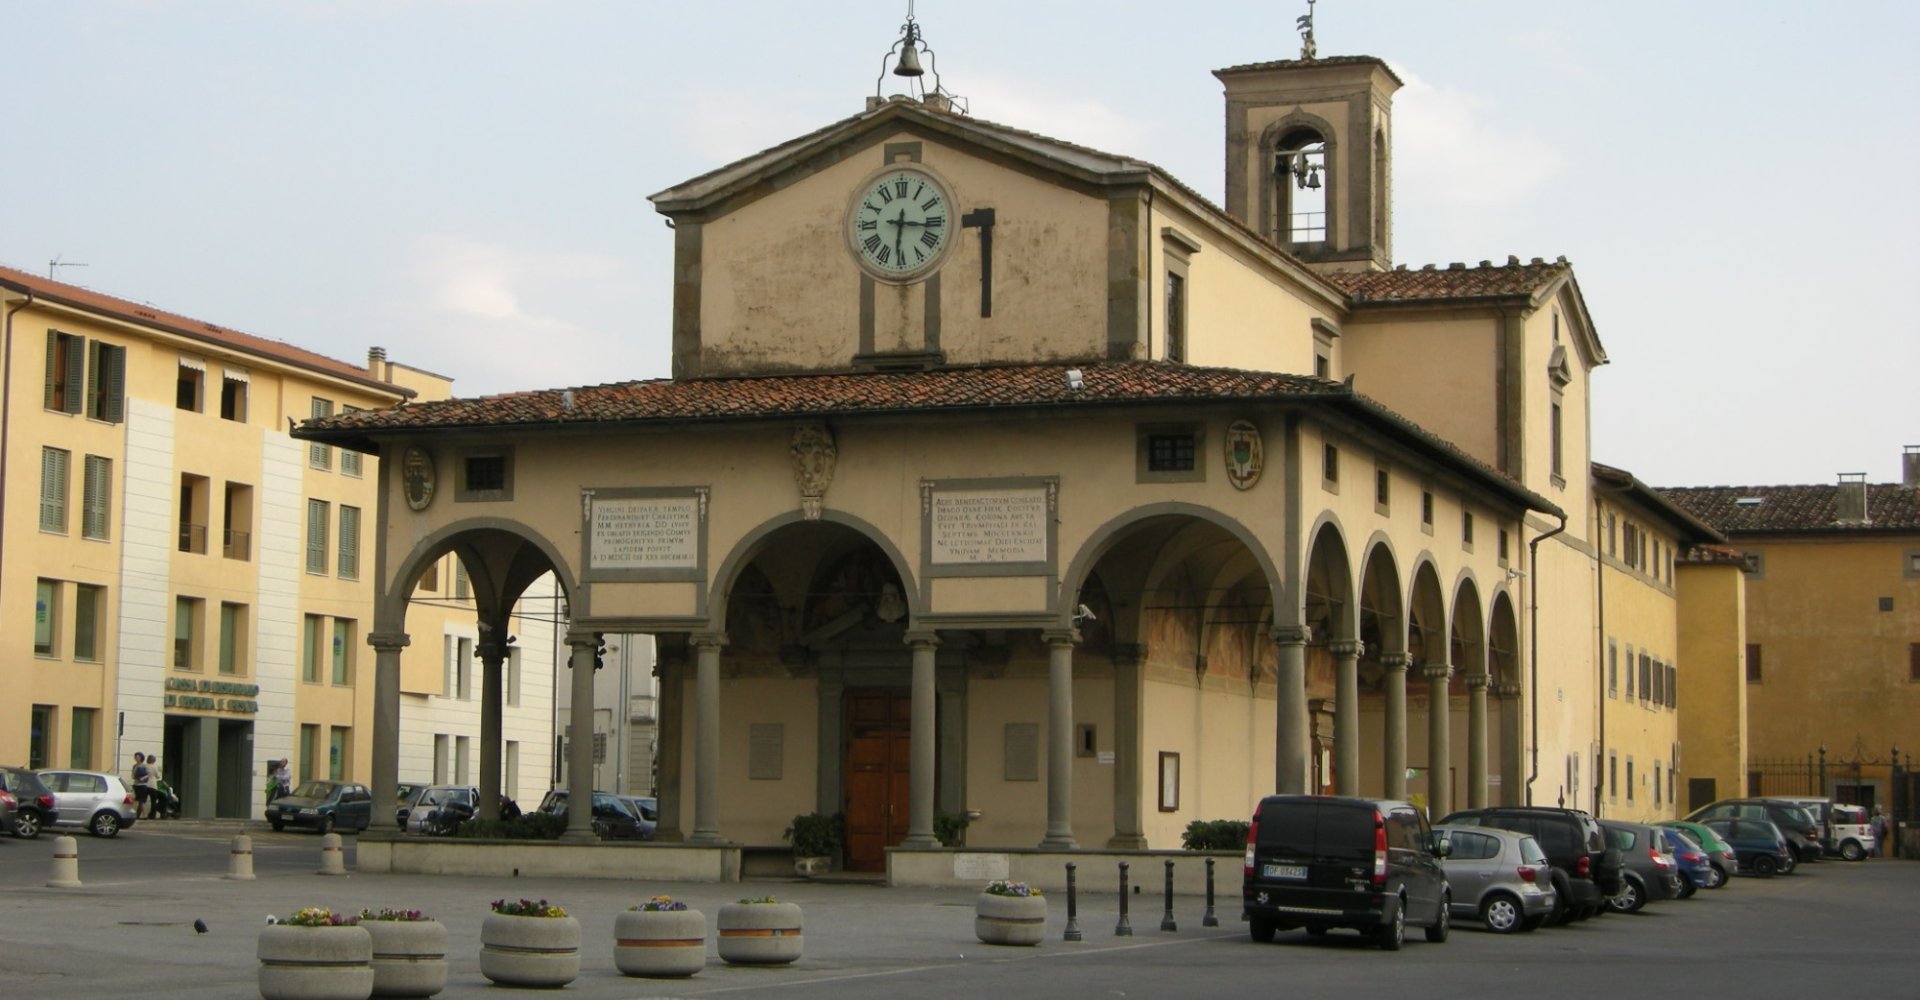 Sanctuary of Santa Maria della Fontenuova in Monsummano Terme